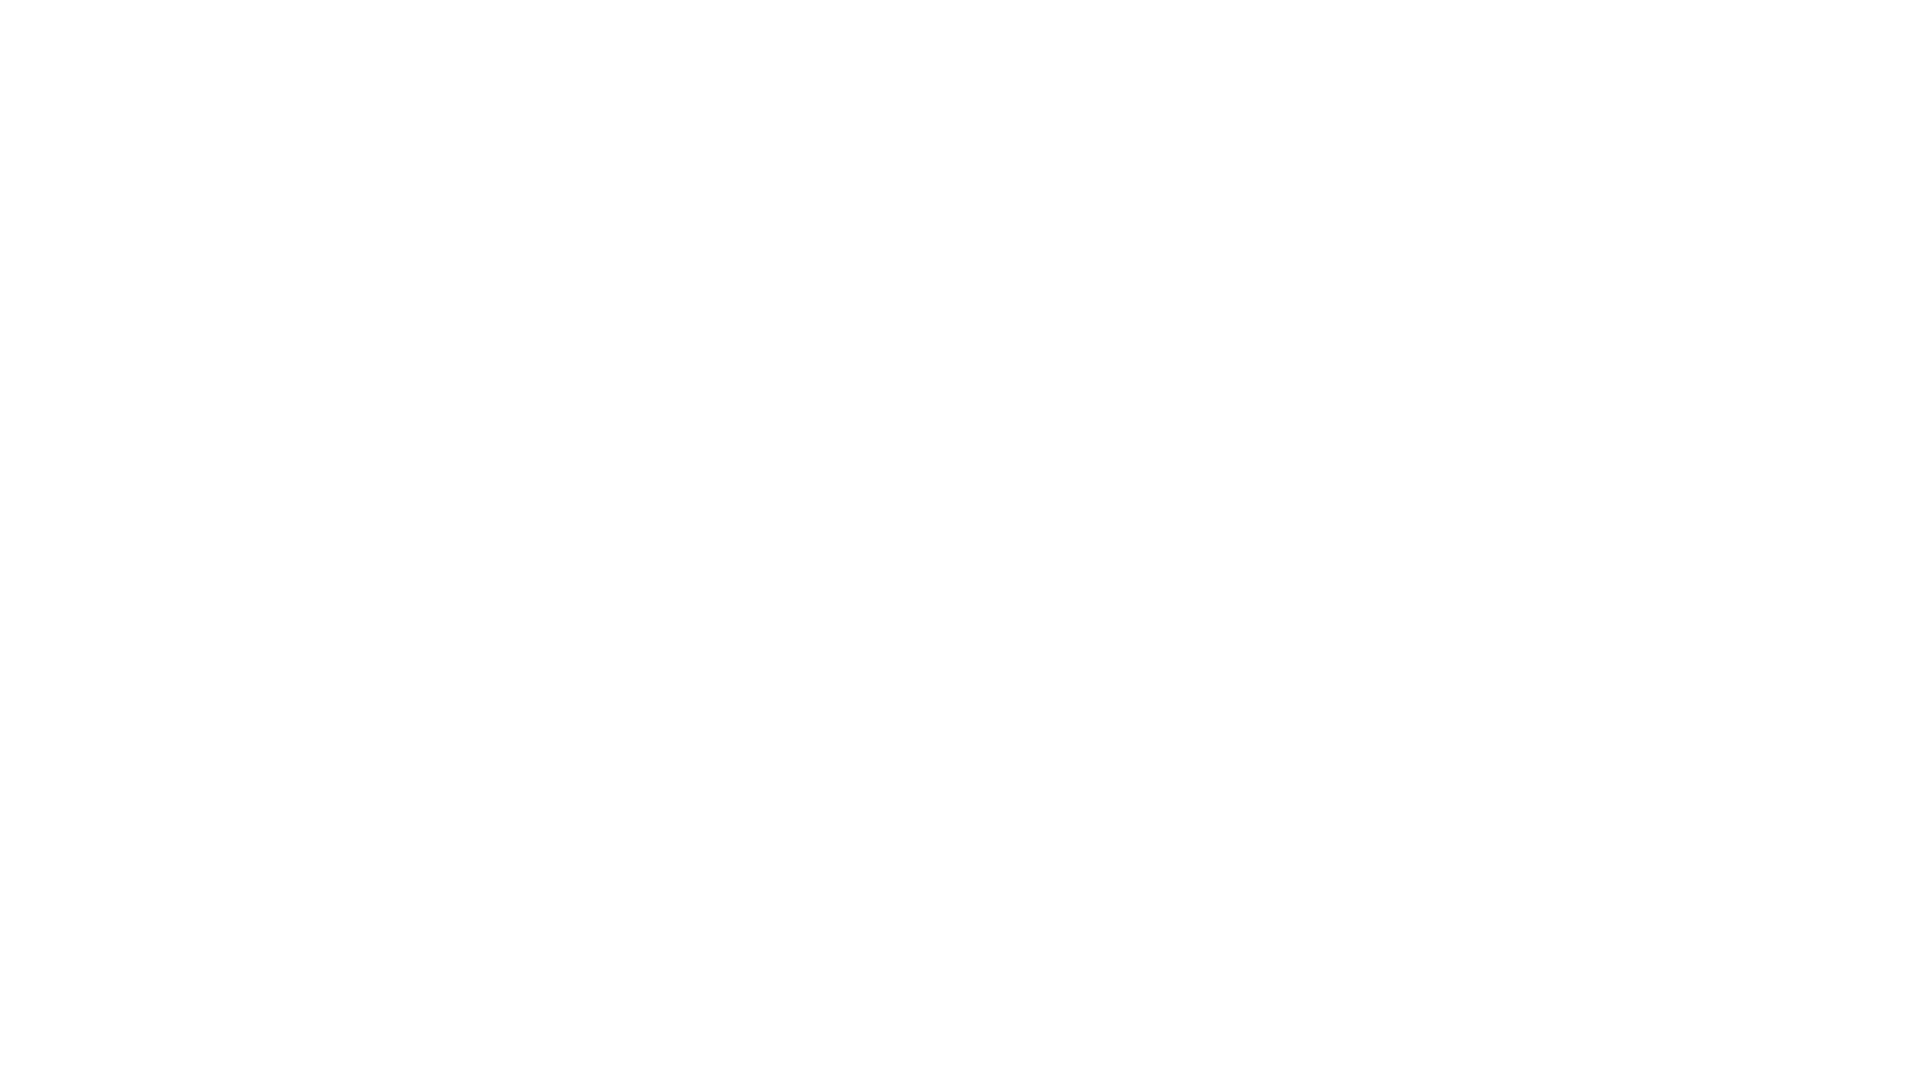 Logo Captuur